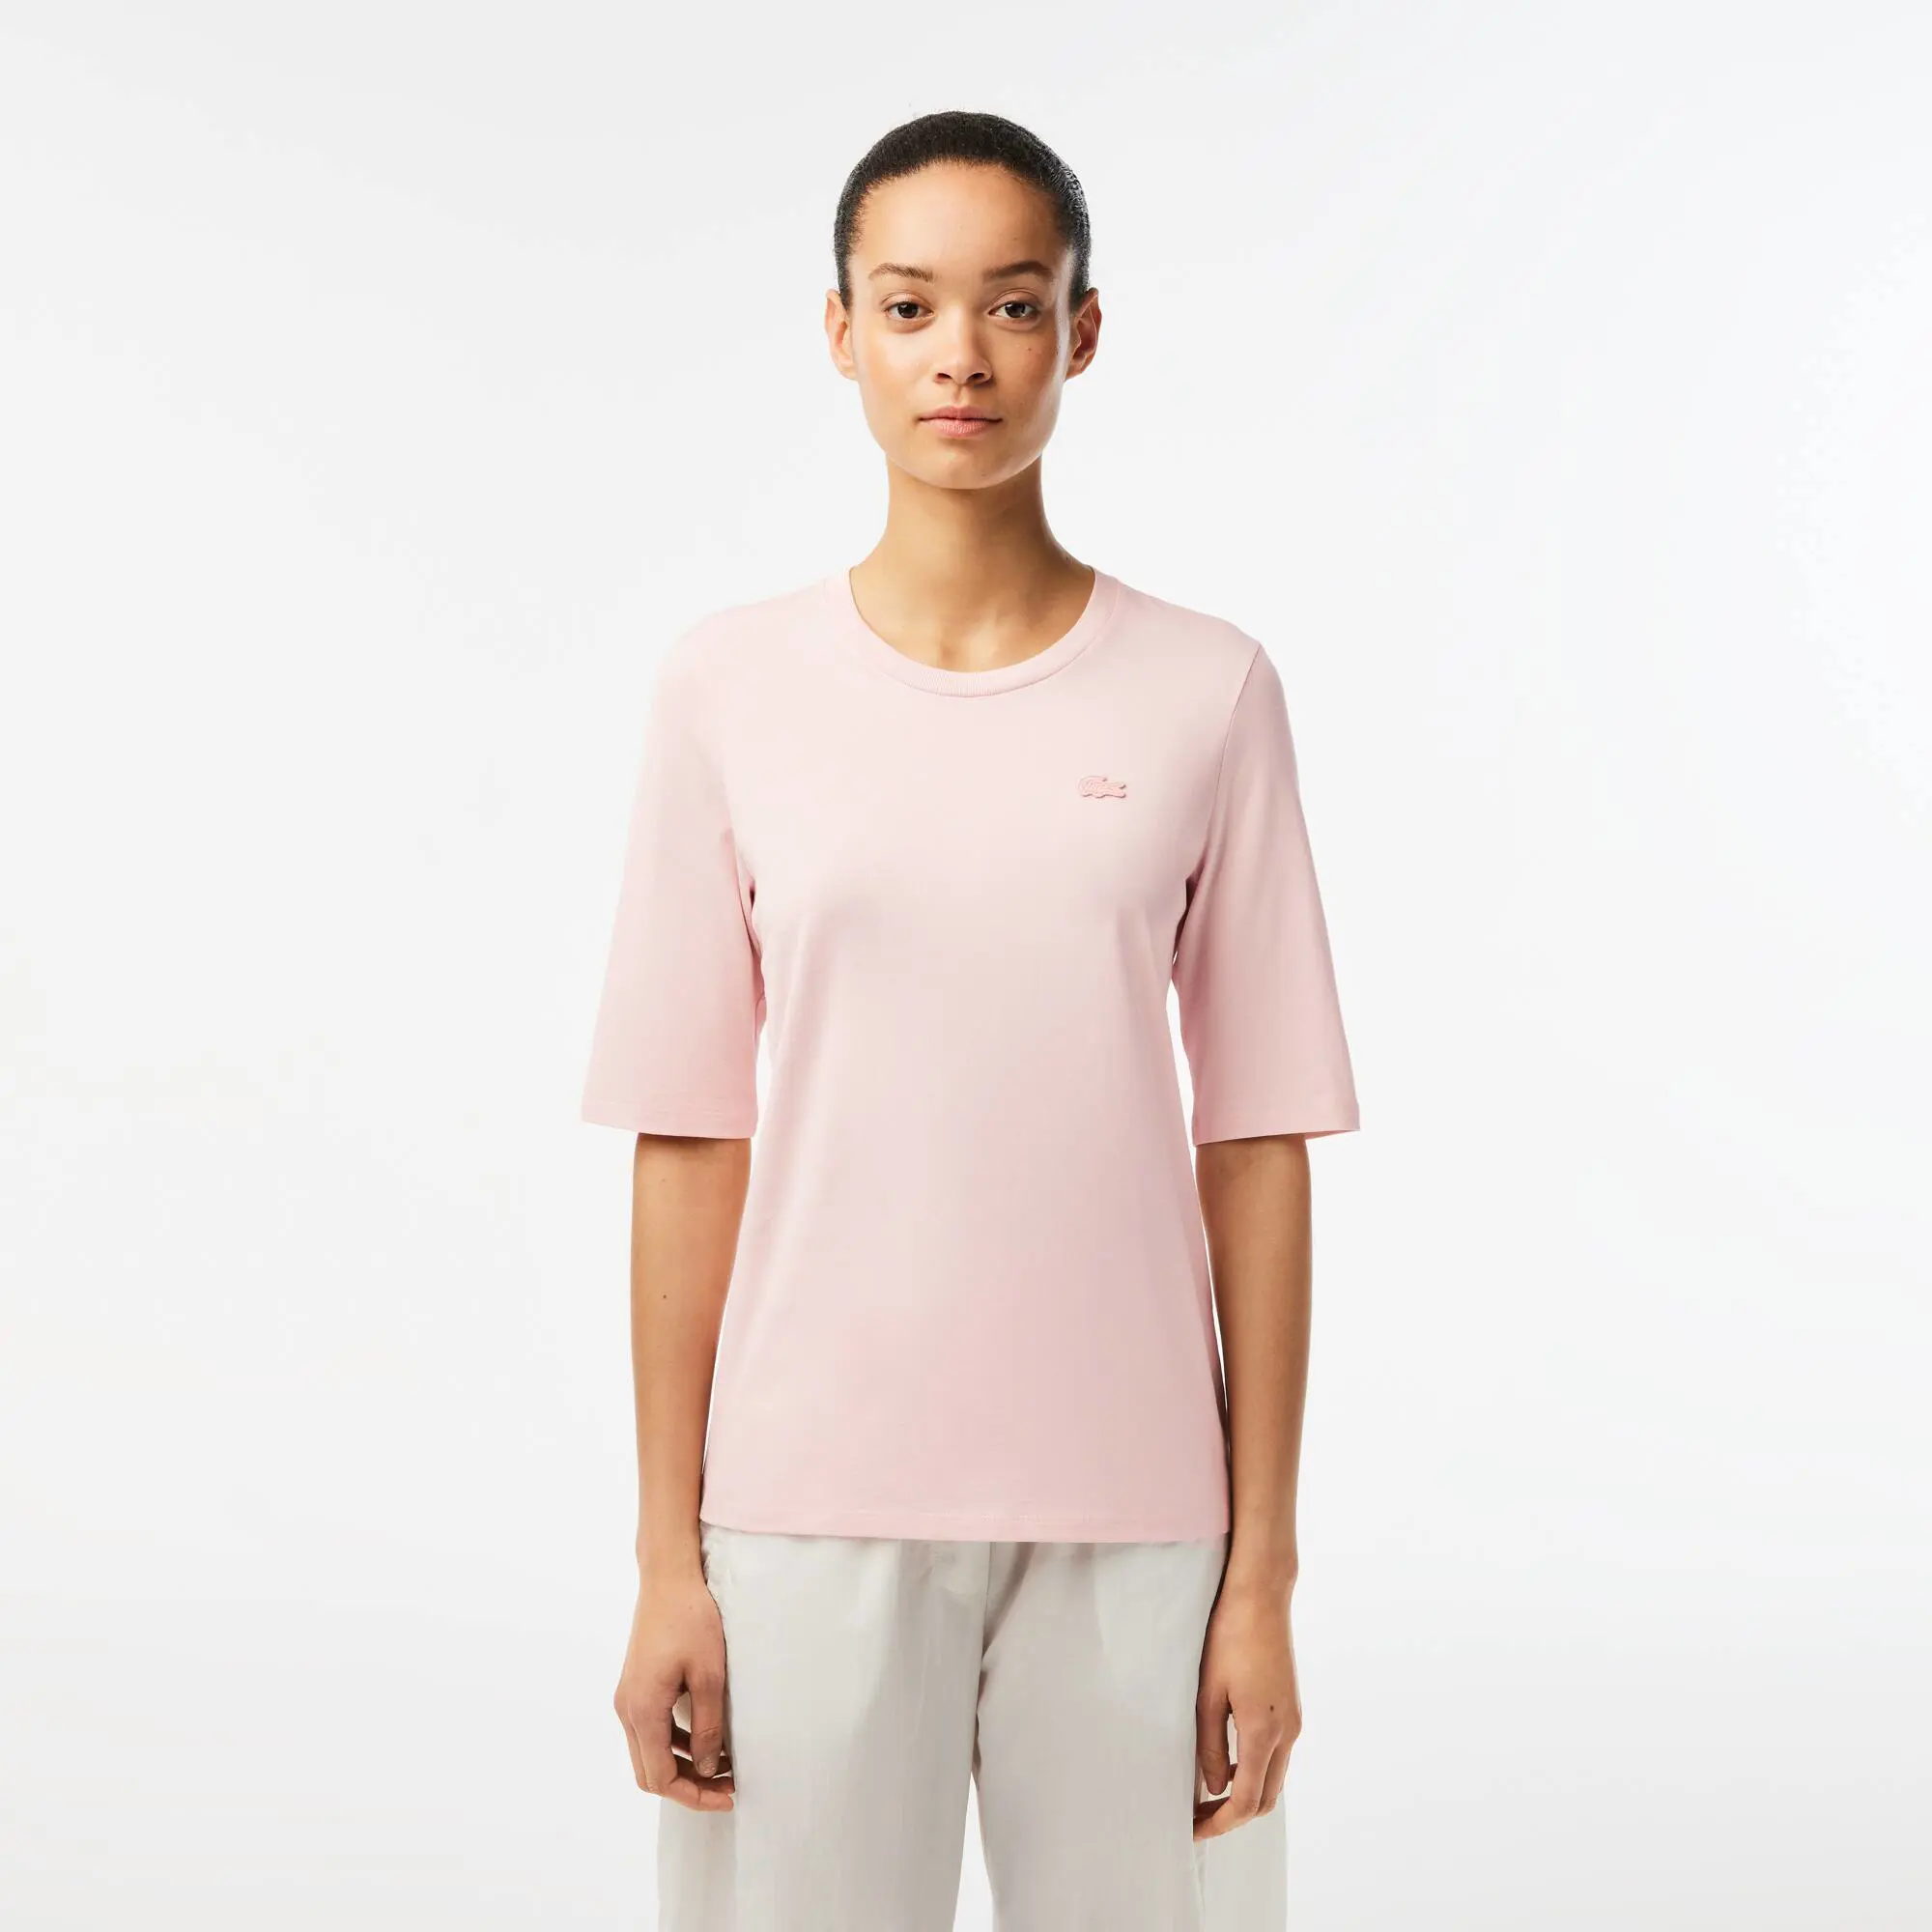 Lacoste Camiseta de mujer en algodón con cuello redondo. 1